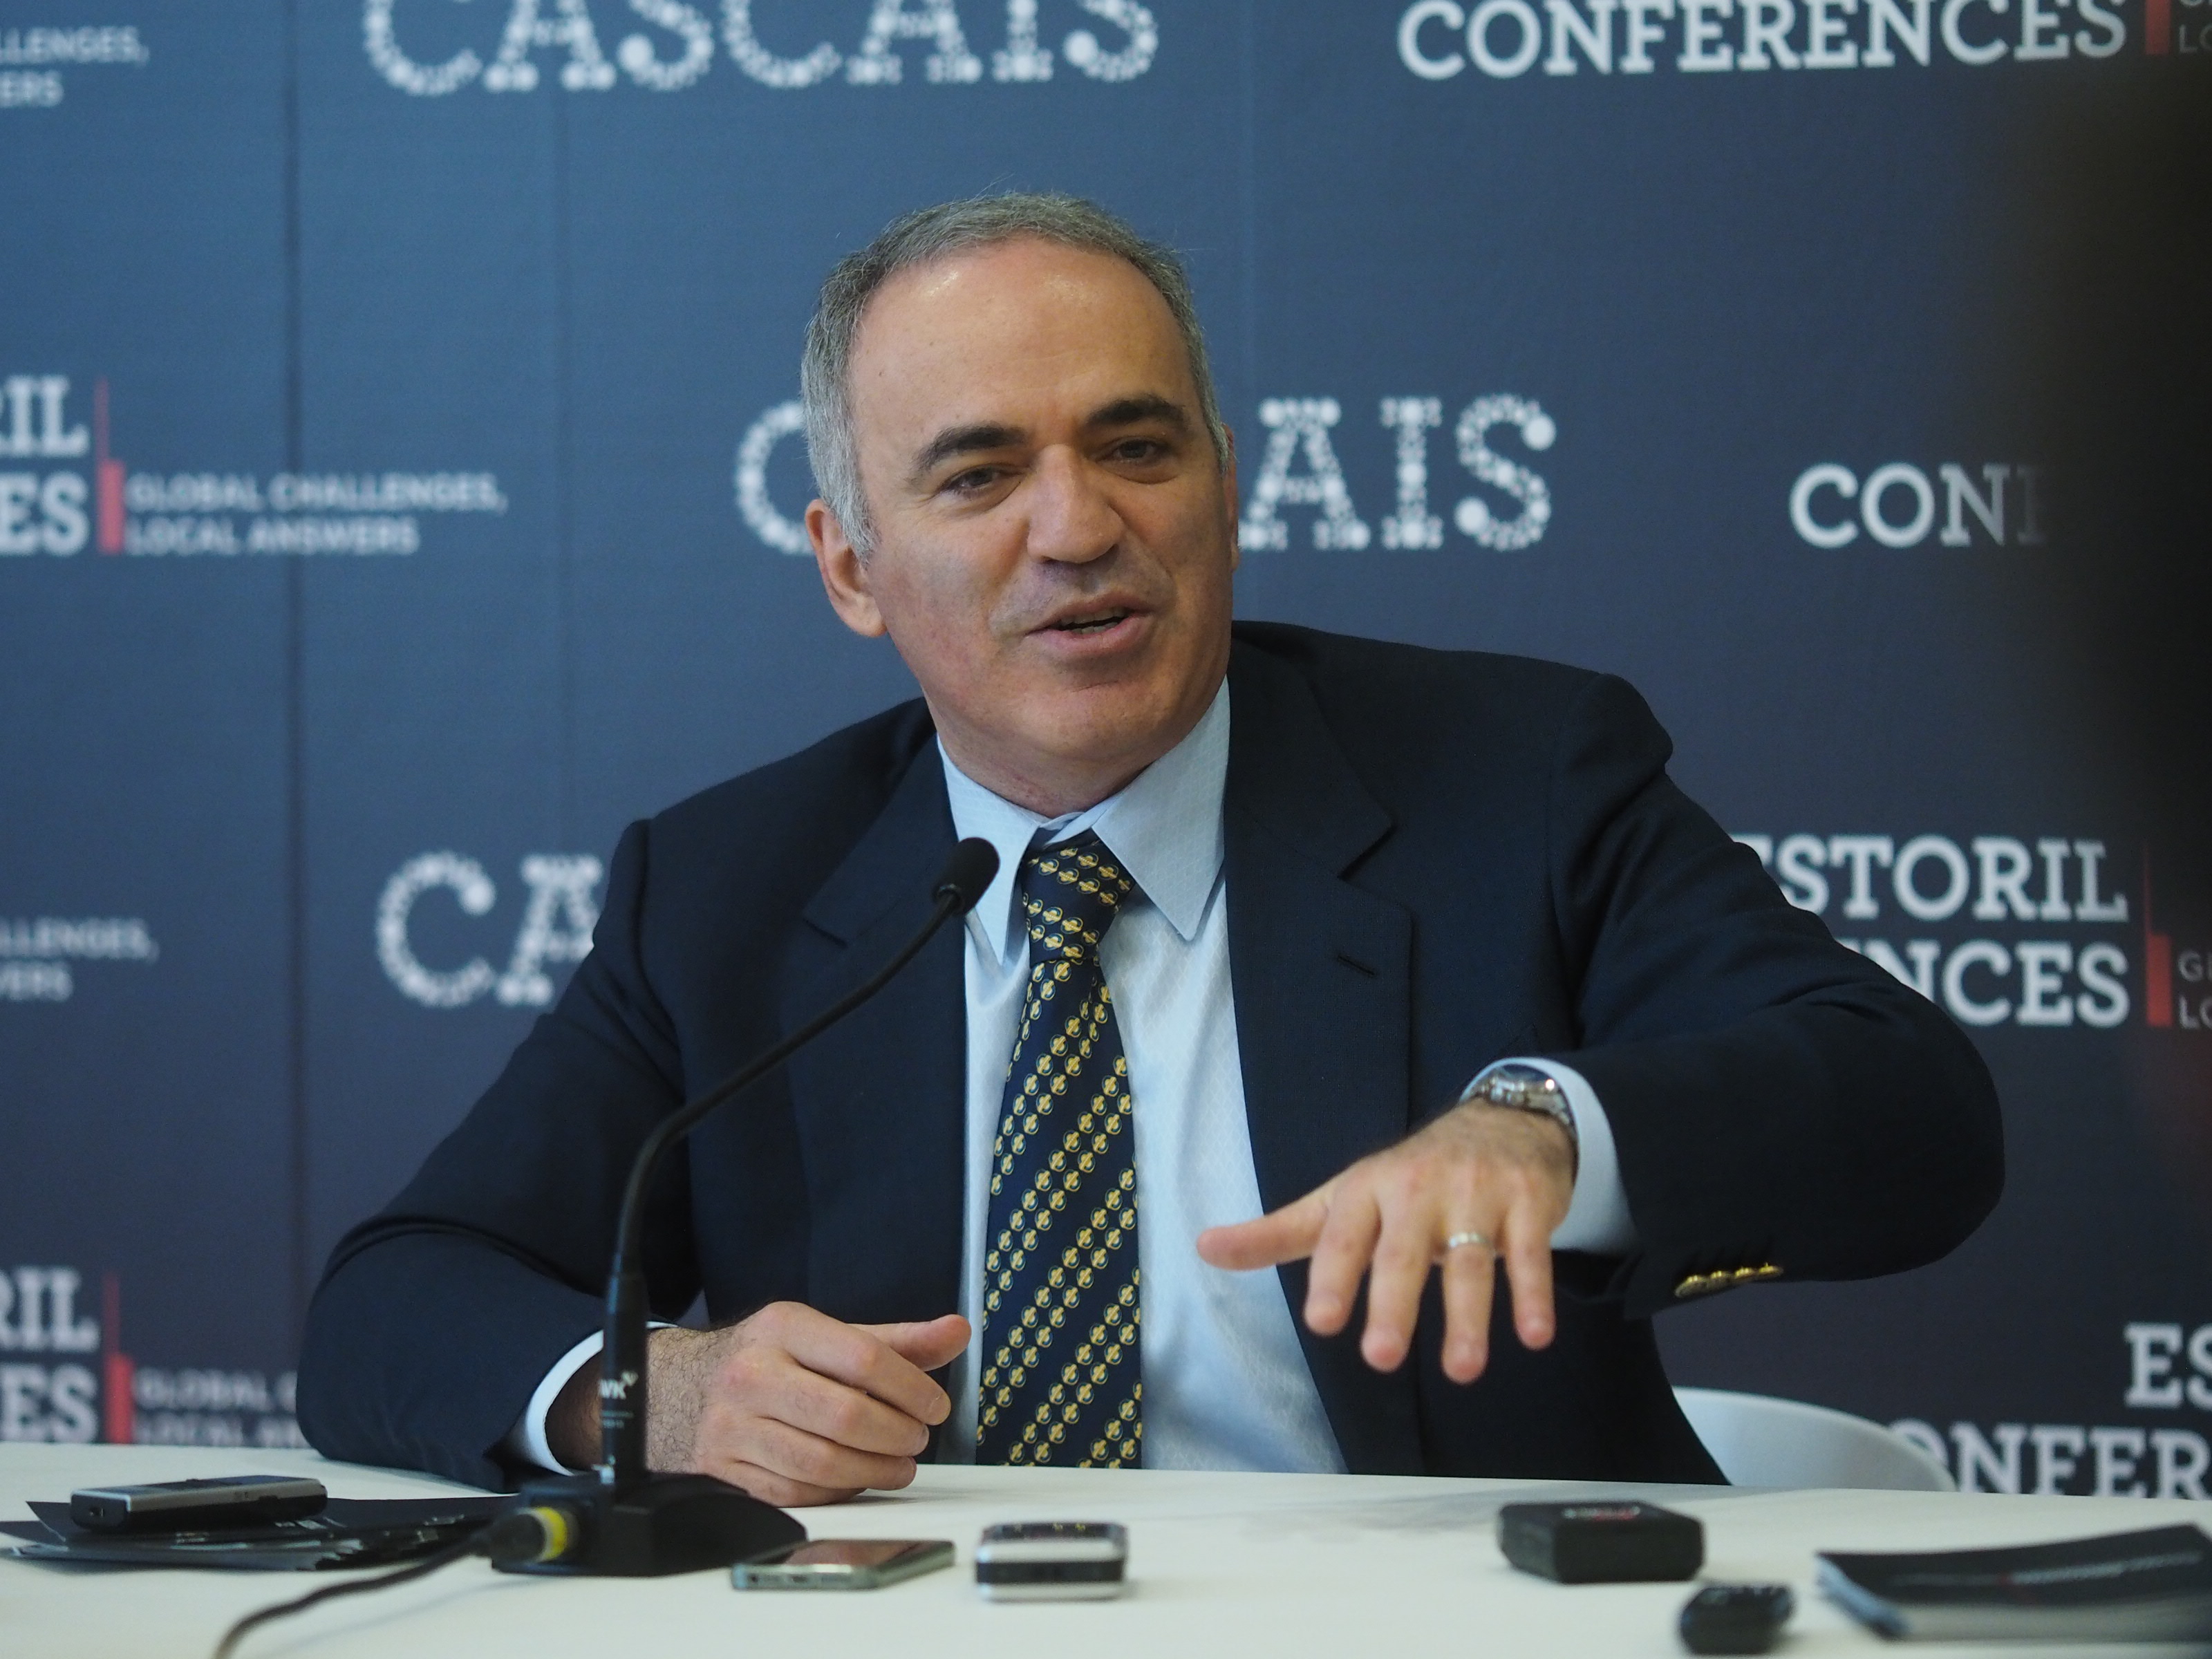 Schachlegende Garri Kasparow / Foto: Jorge Martin / CMC